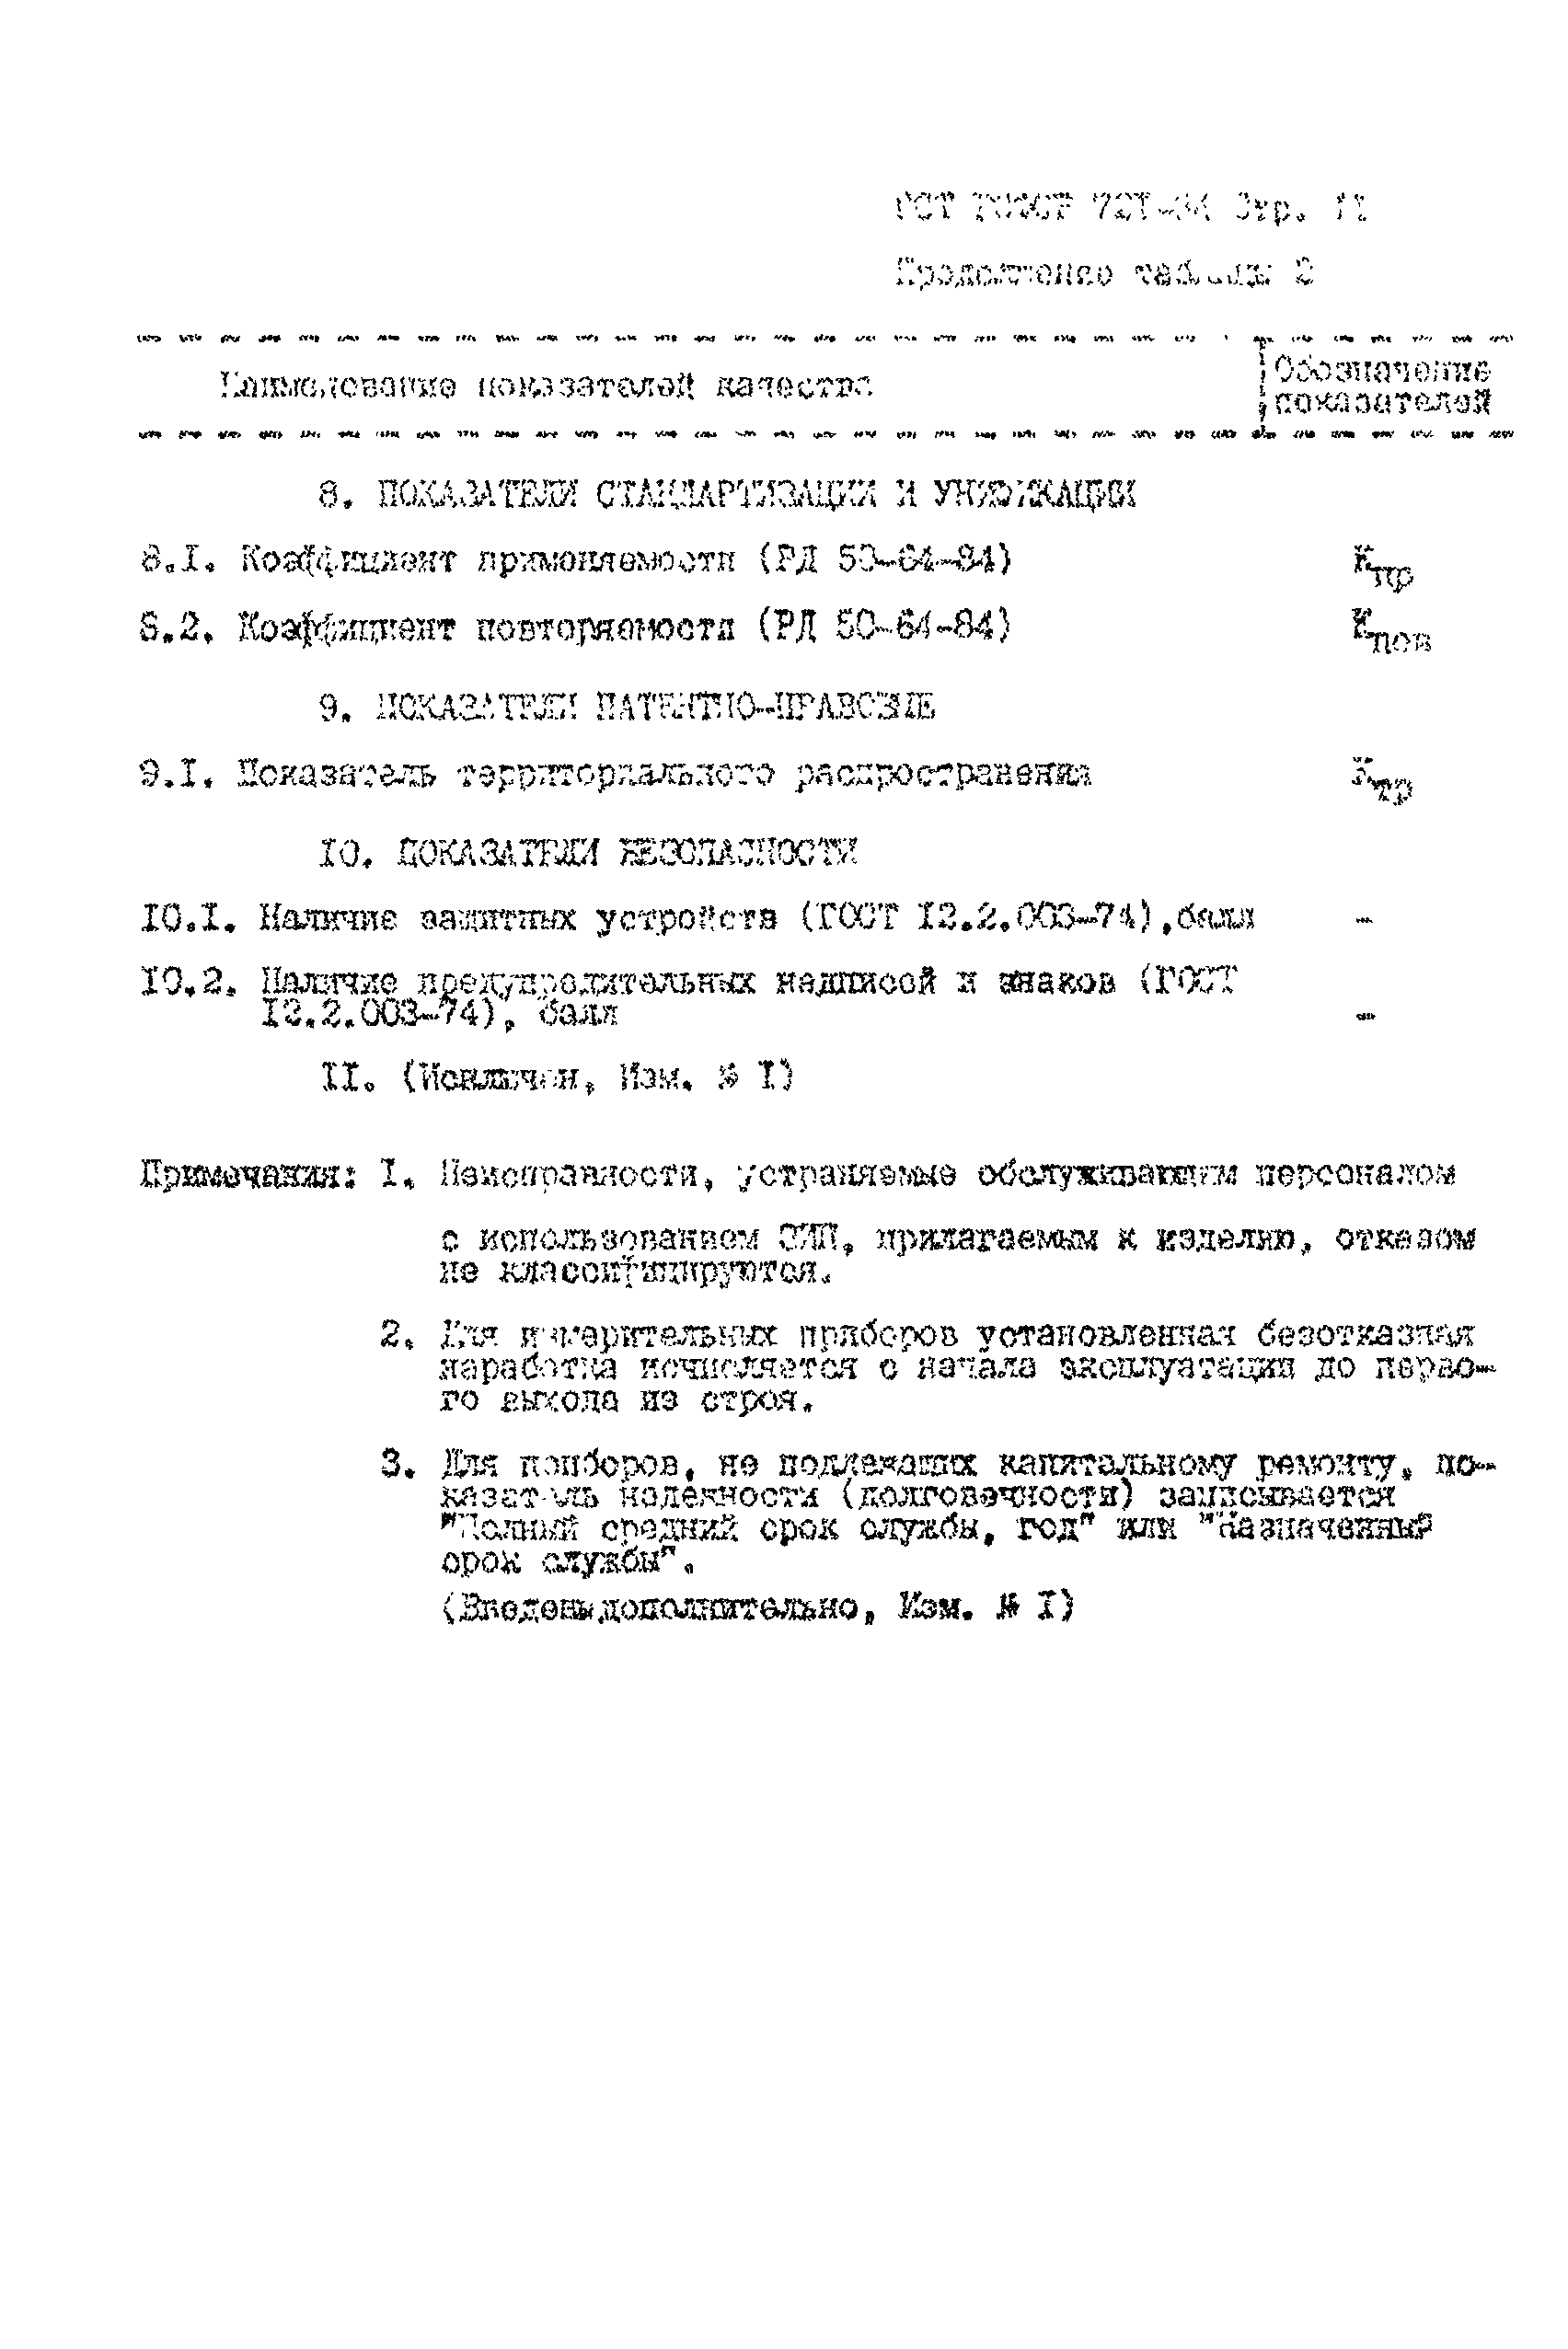 РСТ РСФСР 721-84